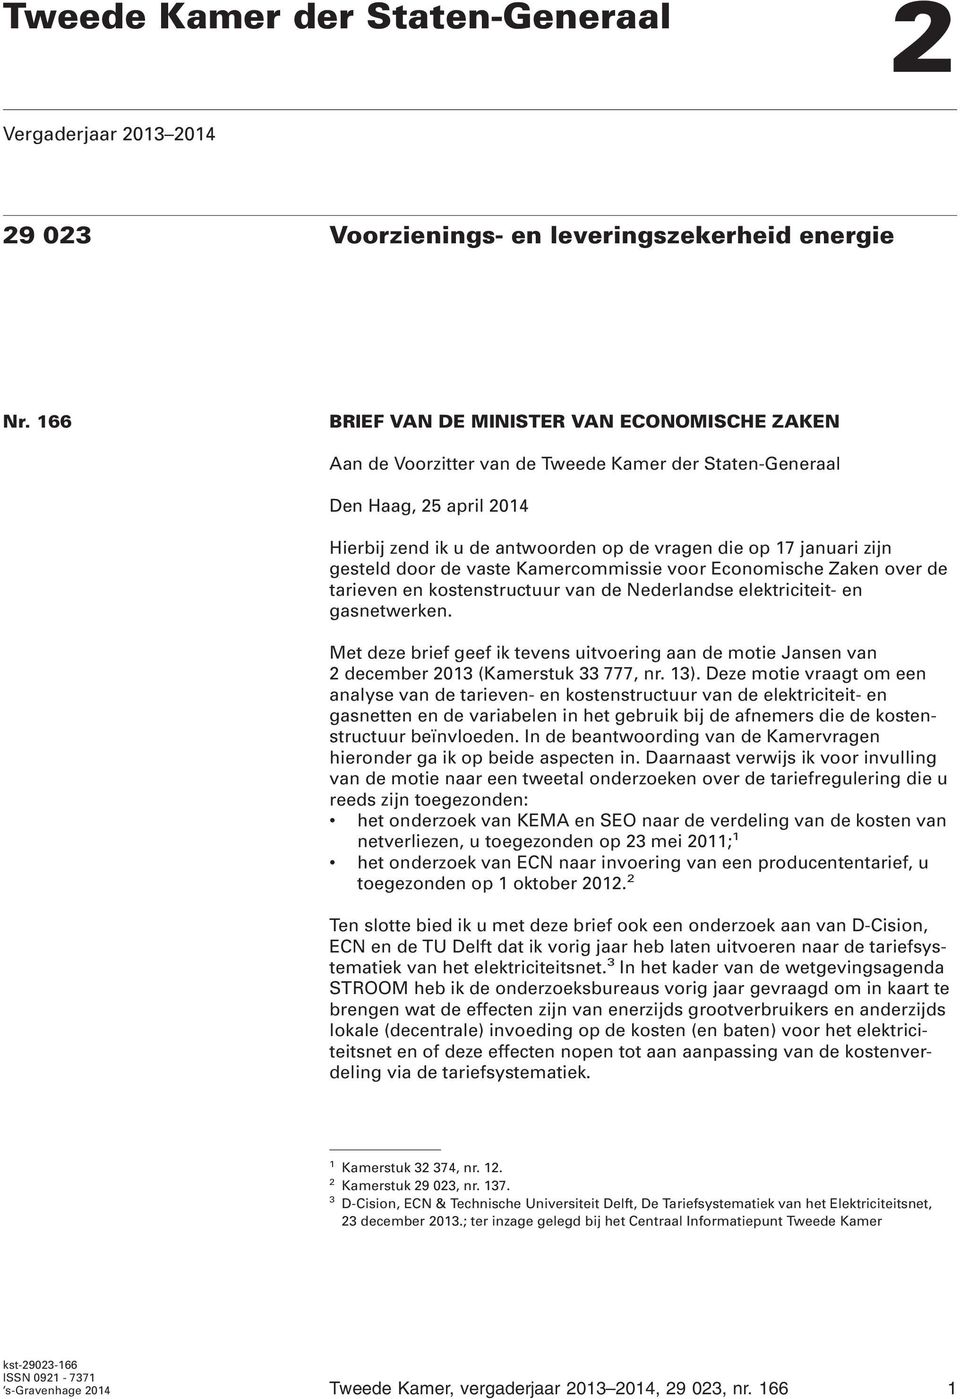 gesteld door de vaste Kamercommissie voor Economische Zaken over de tarieven en kostenstructuur van de Nederlandse elektriciteit- en gasnetwerken.